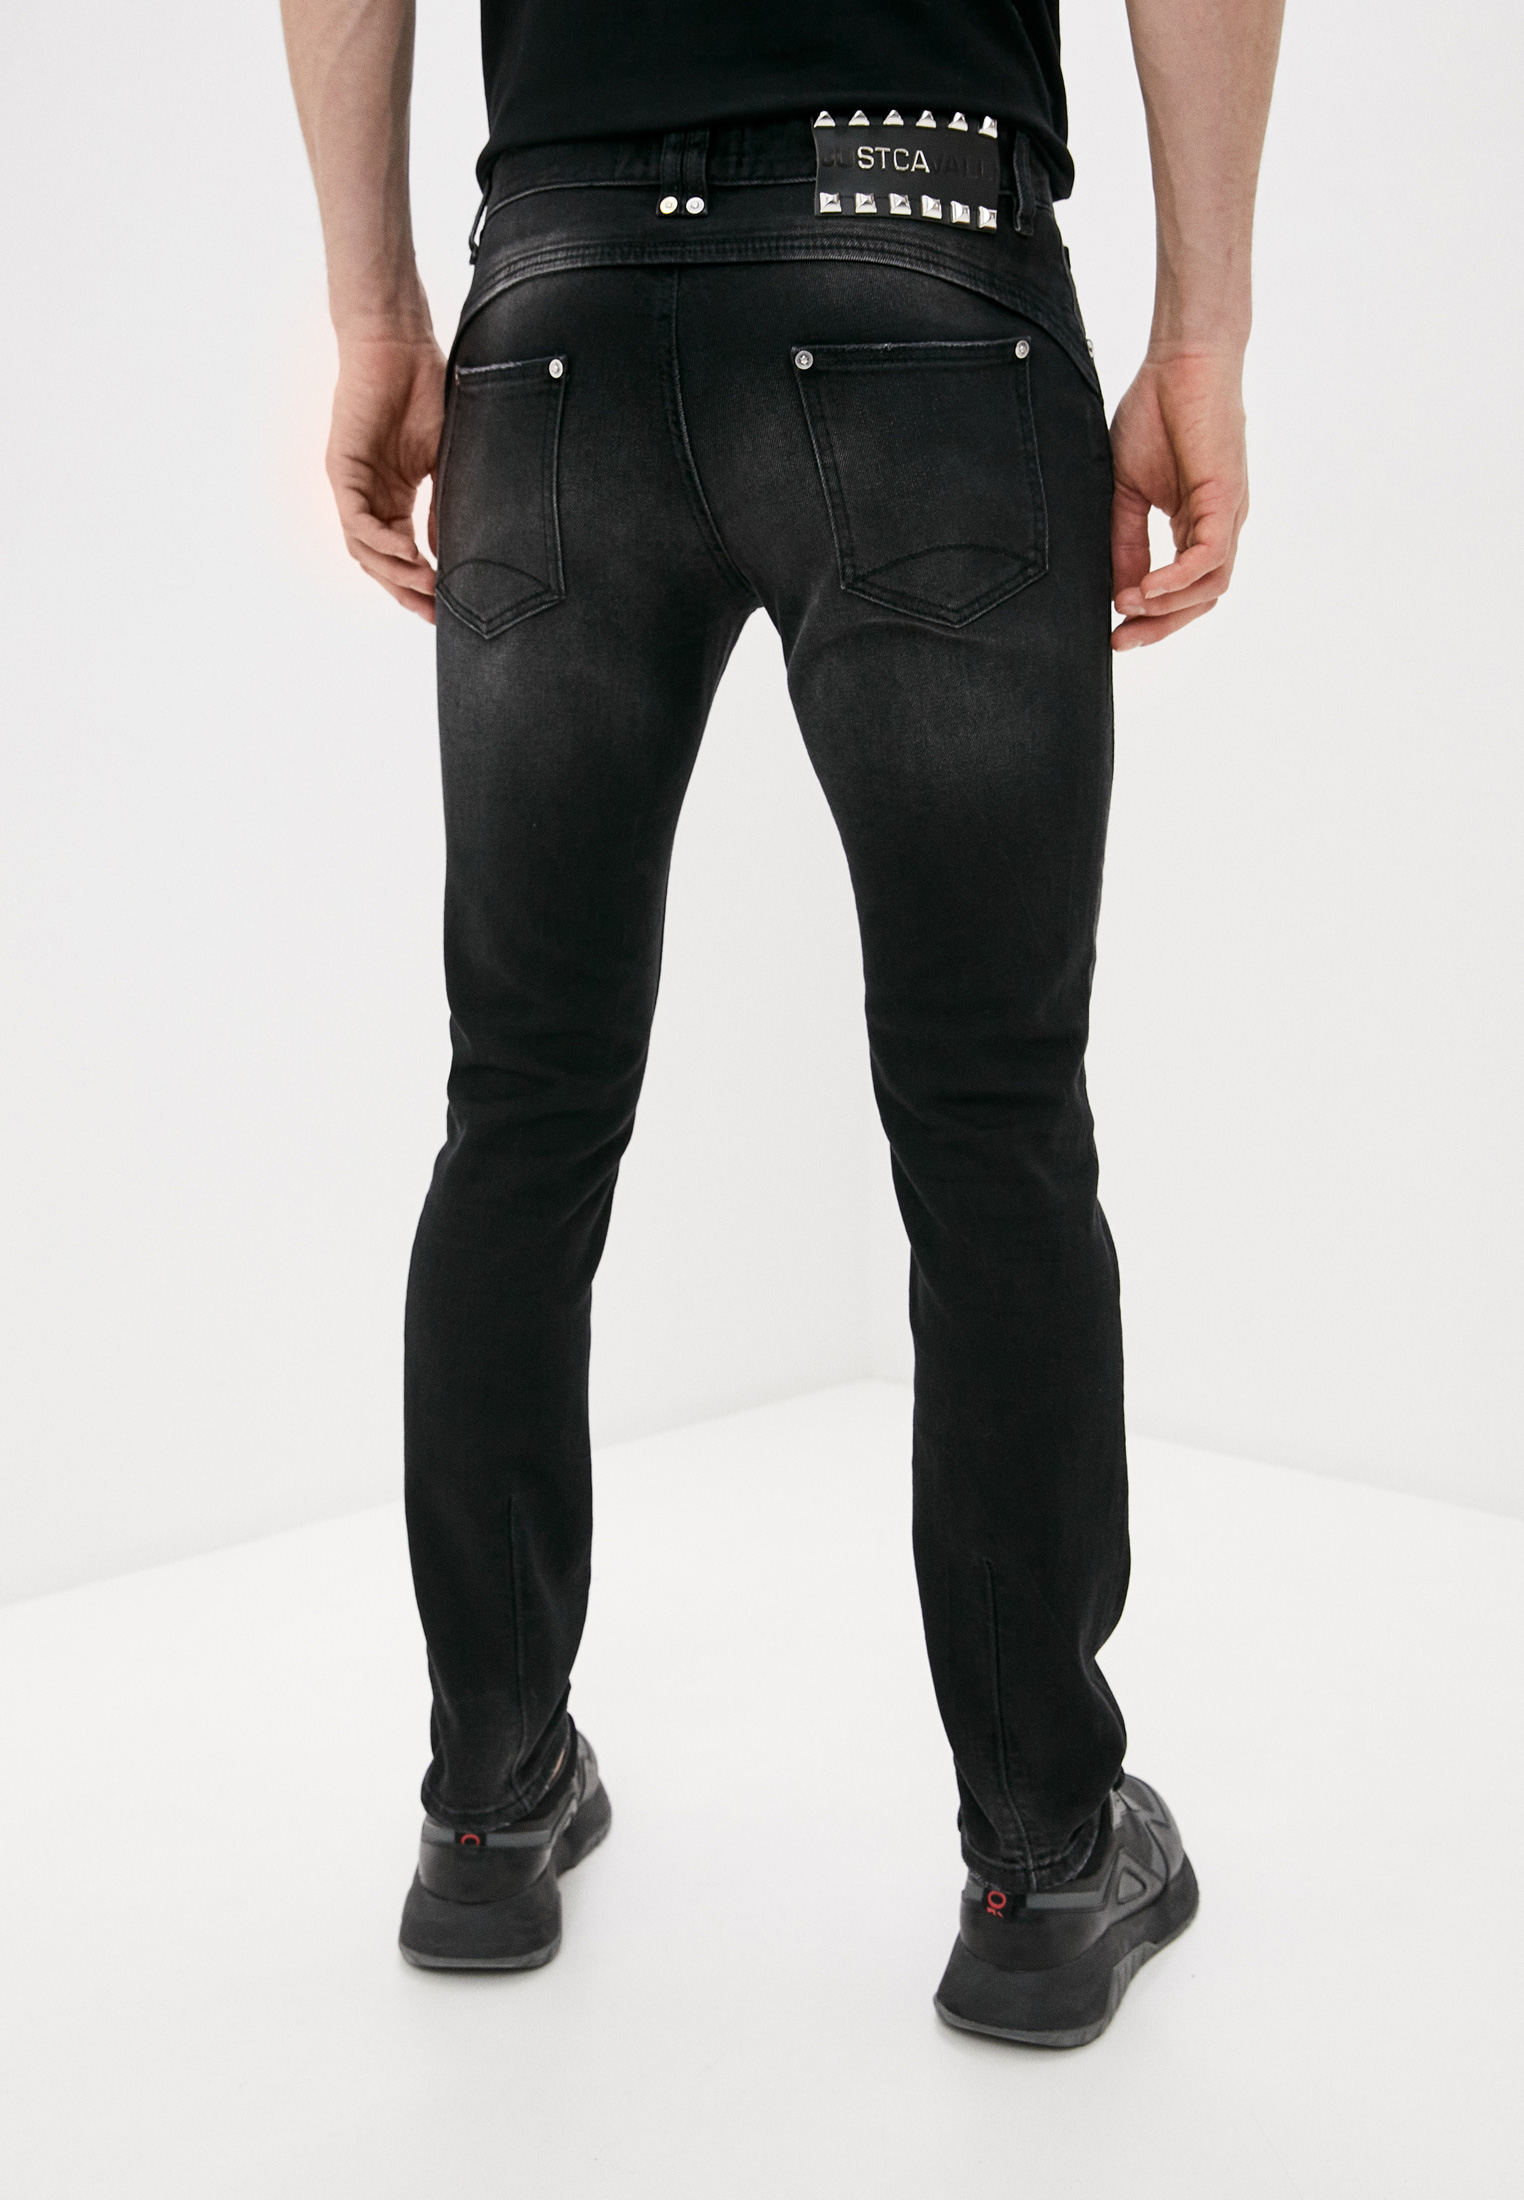 Мужские зауженные джинсы Just Cavalli (Джаст Кавалли) S01LA0139N31874: изображение 4